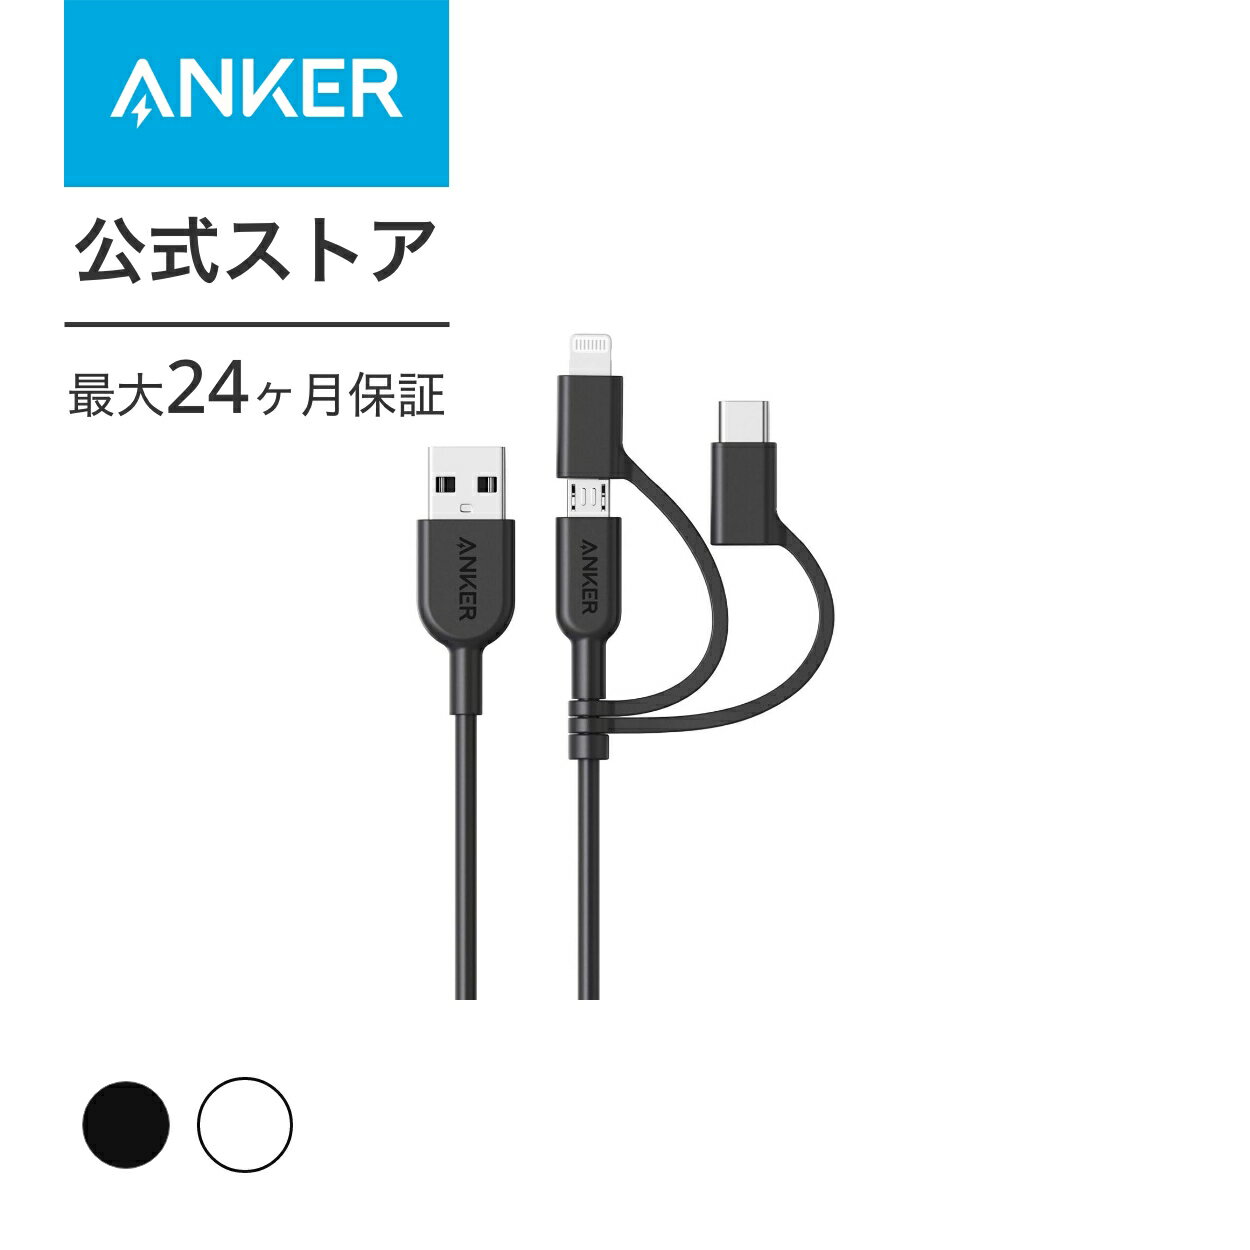 【一部あす楽対応】Anker PowerLine II 3-in-1 ケーブル（ライトニングUSB/USB-C/Micro USB端子対応ケーブル）【Apple MFi認証取得】iPhone XS/XS Max/XR 対応 (0.9m ブラック ホワイト)